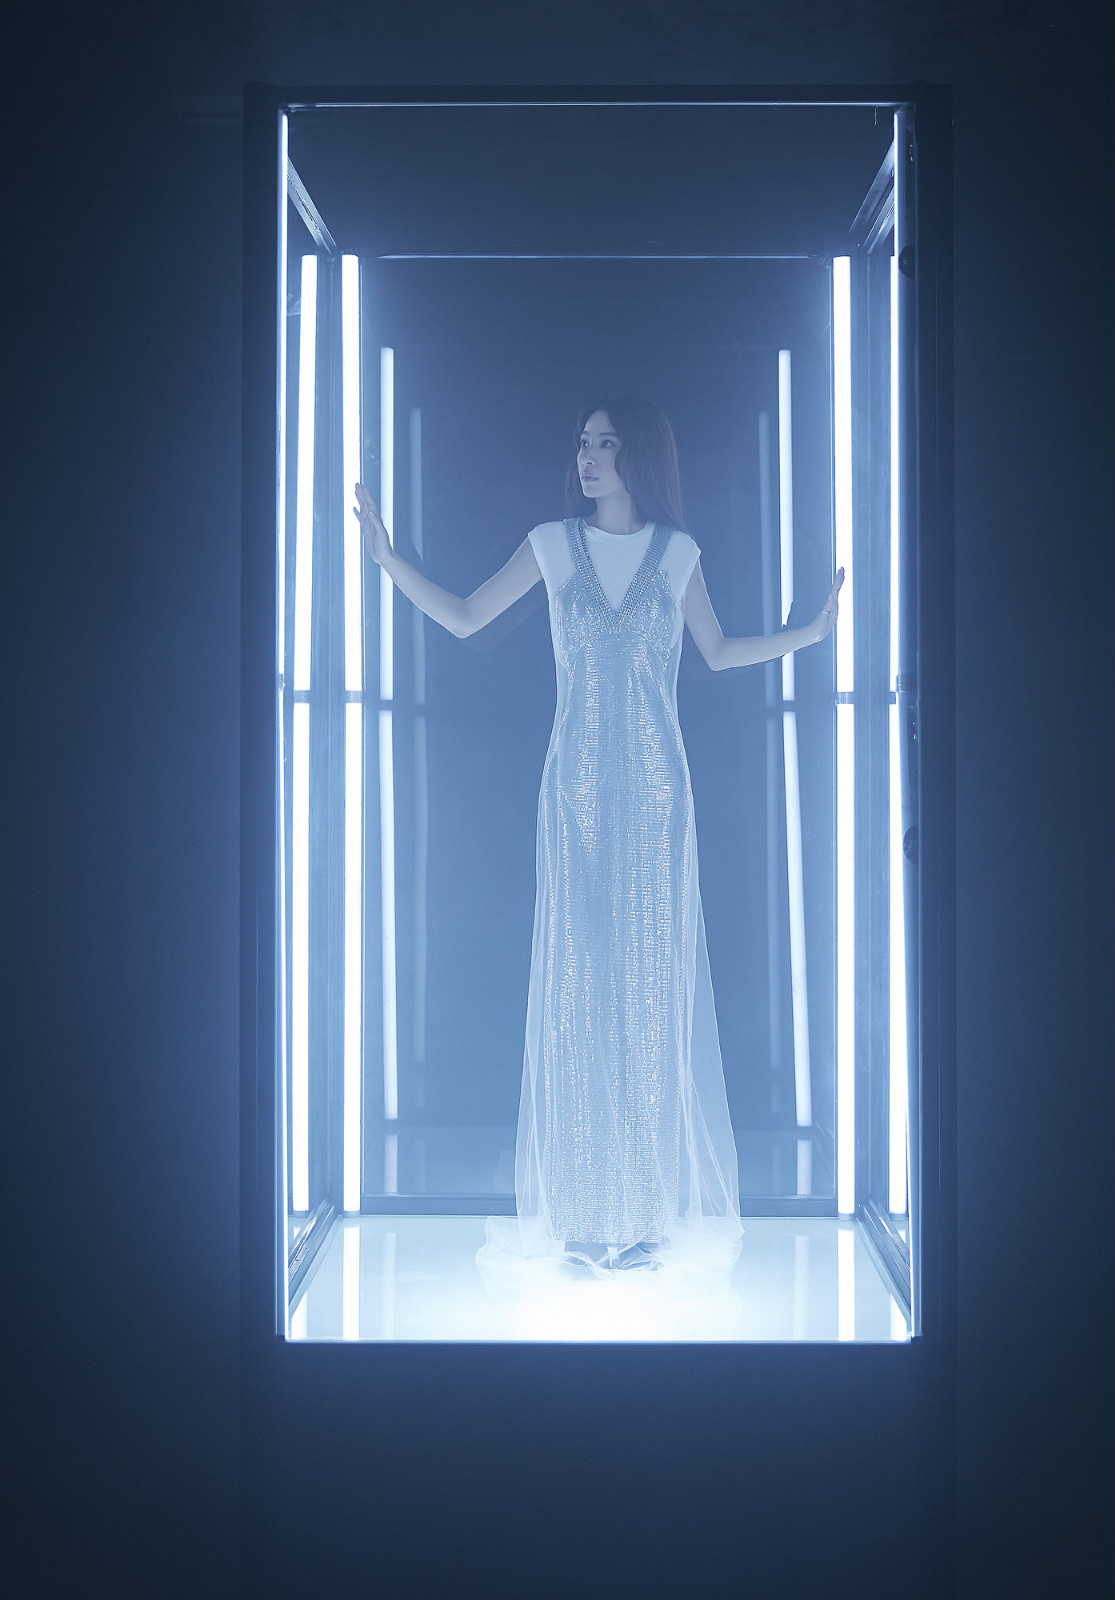 田馥甄新歌《底裏歇斯》MV上線 詮釋深陷科技無法自拔的自由意識